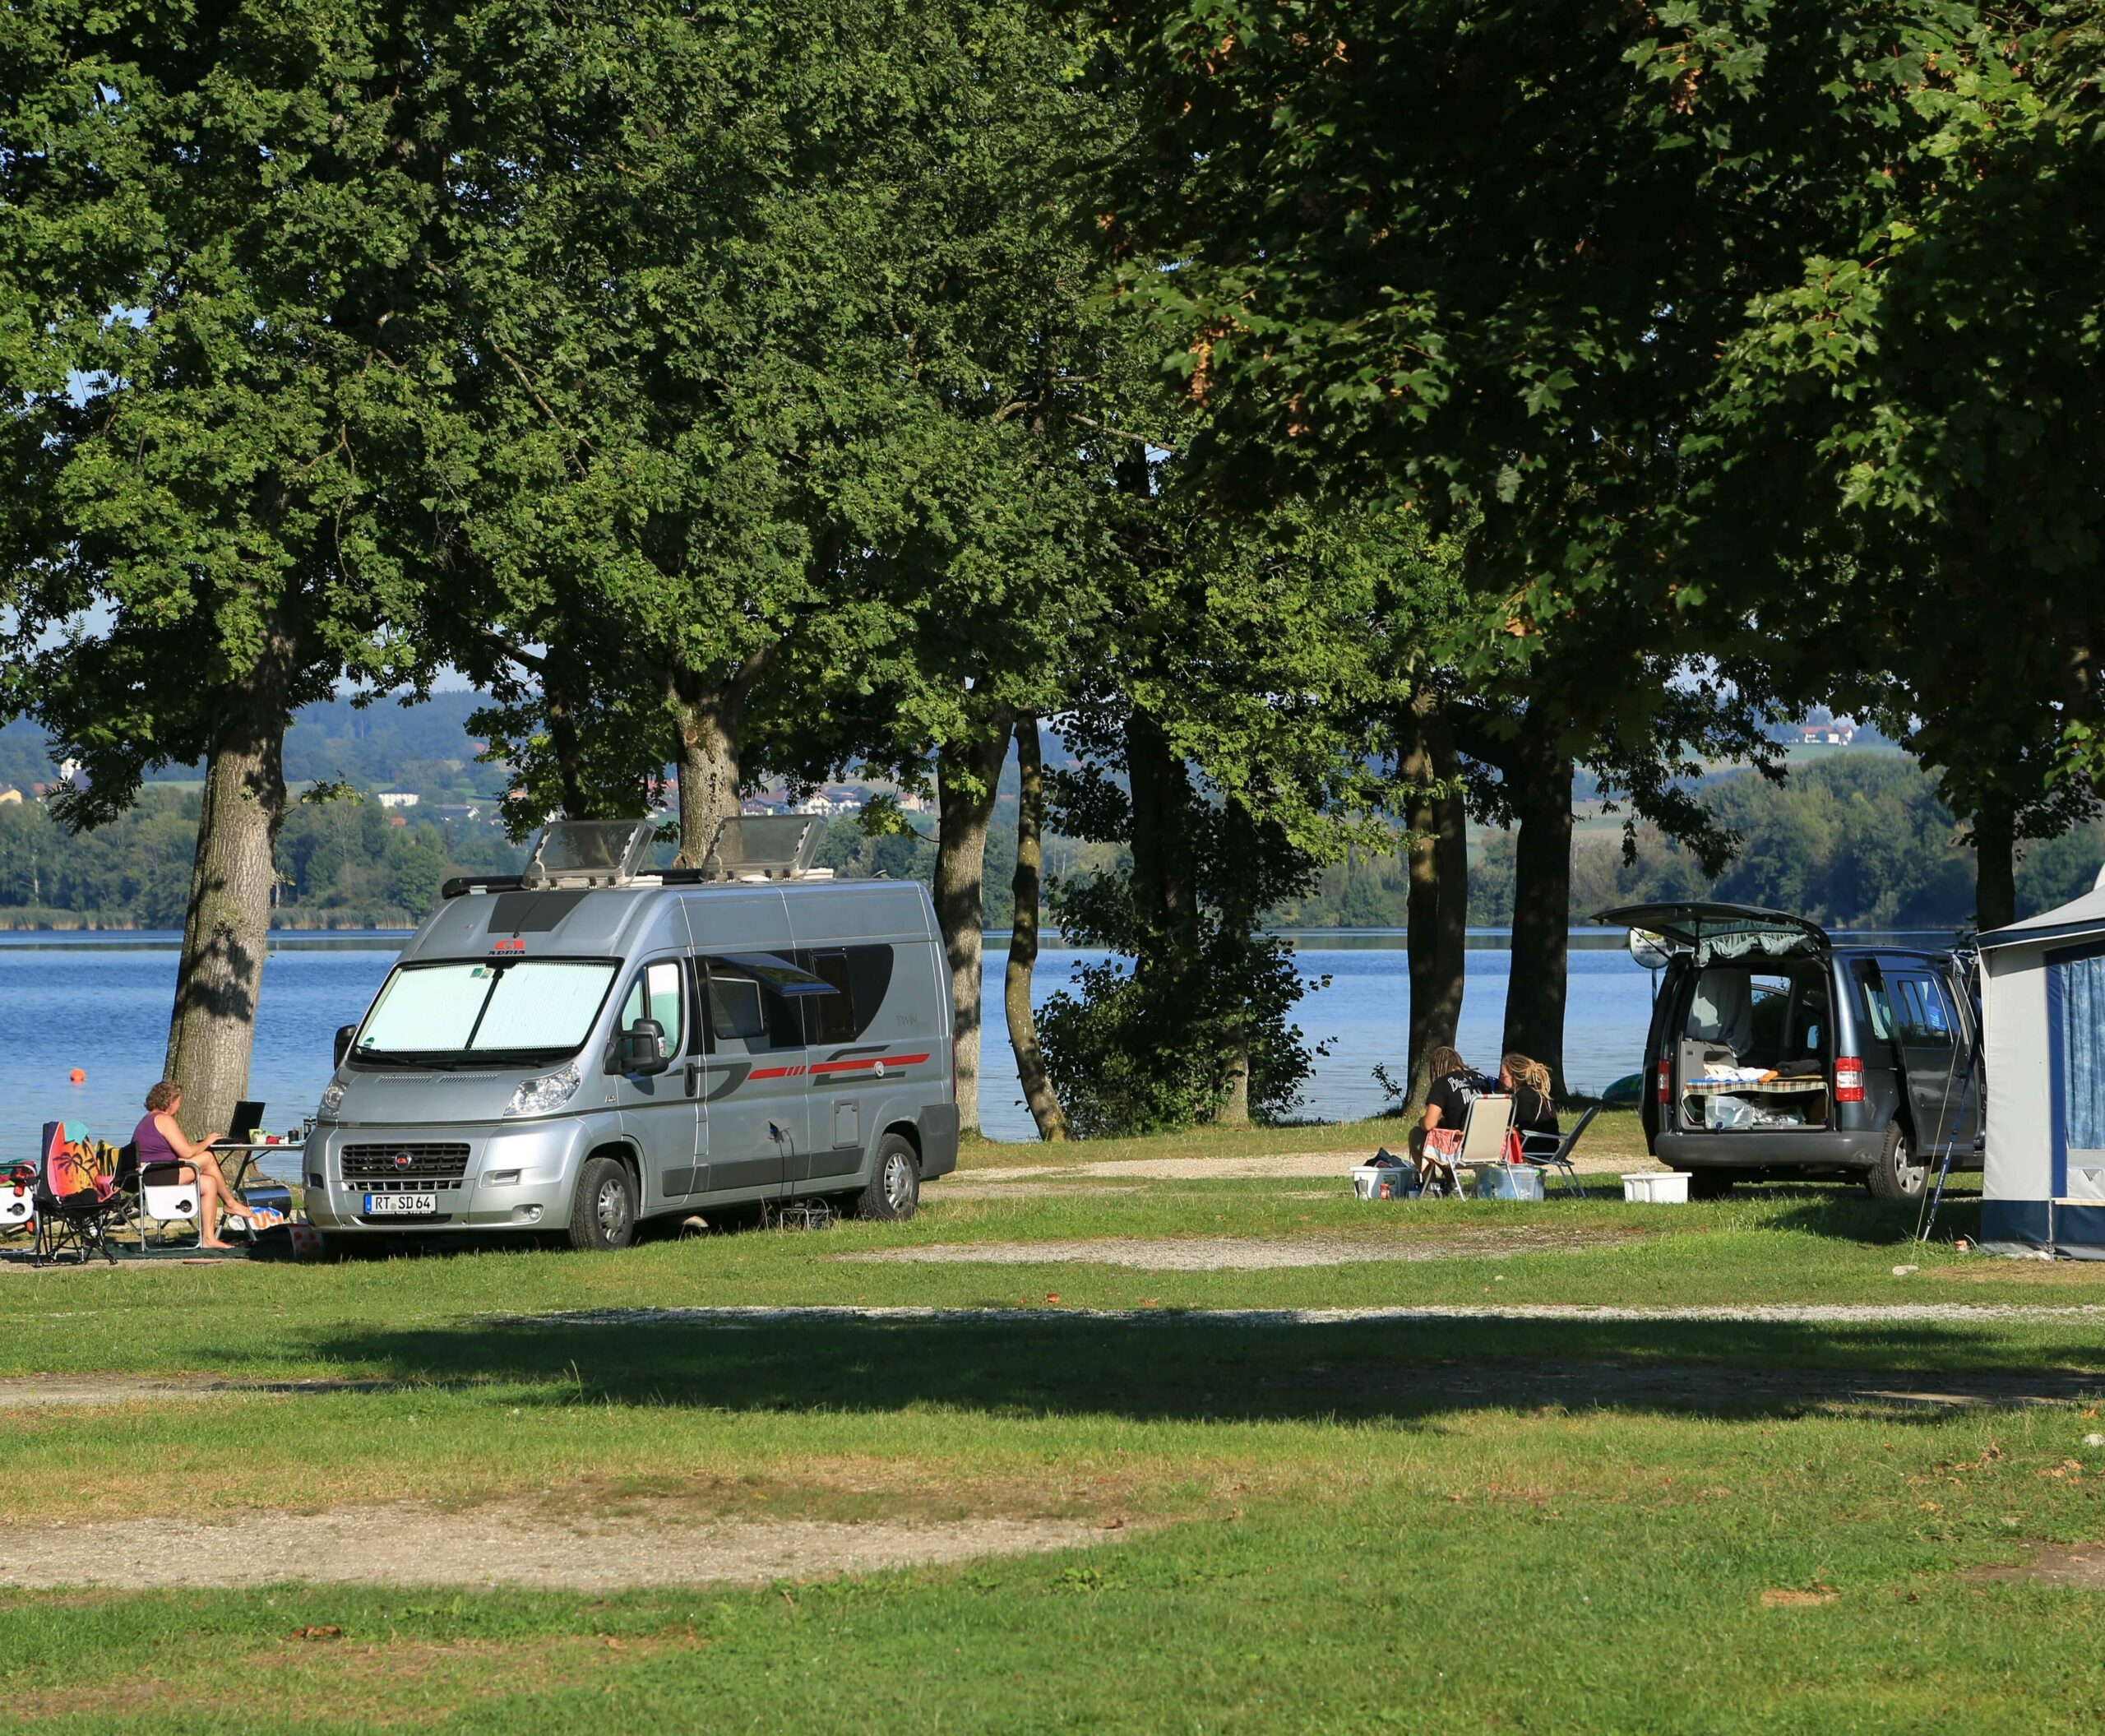 Mehrere Camper und Campingbusse auf der Campingwiese vor dem See.